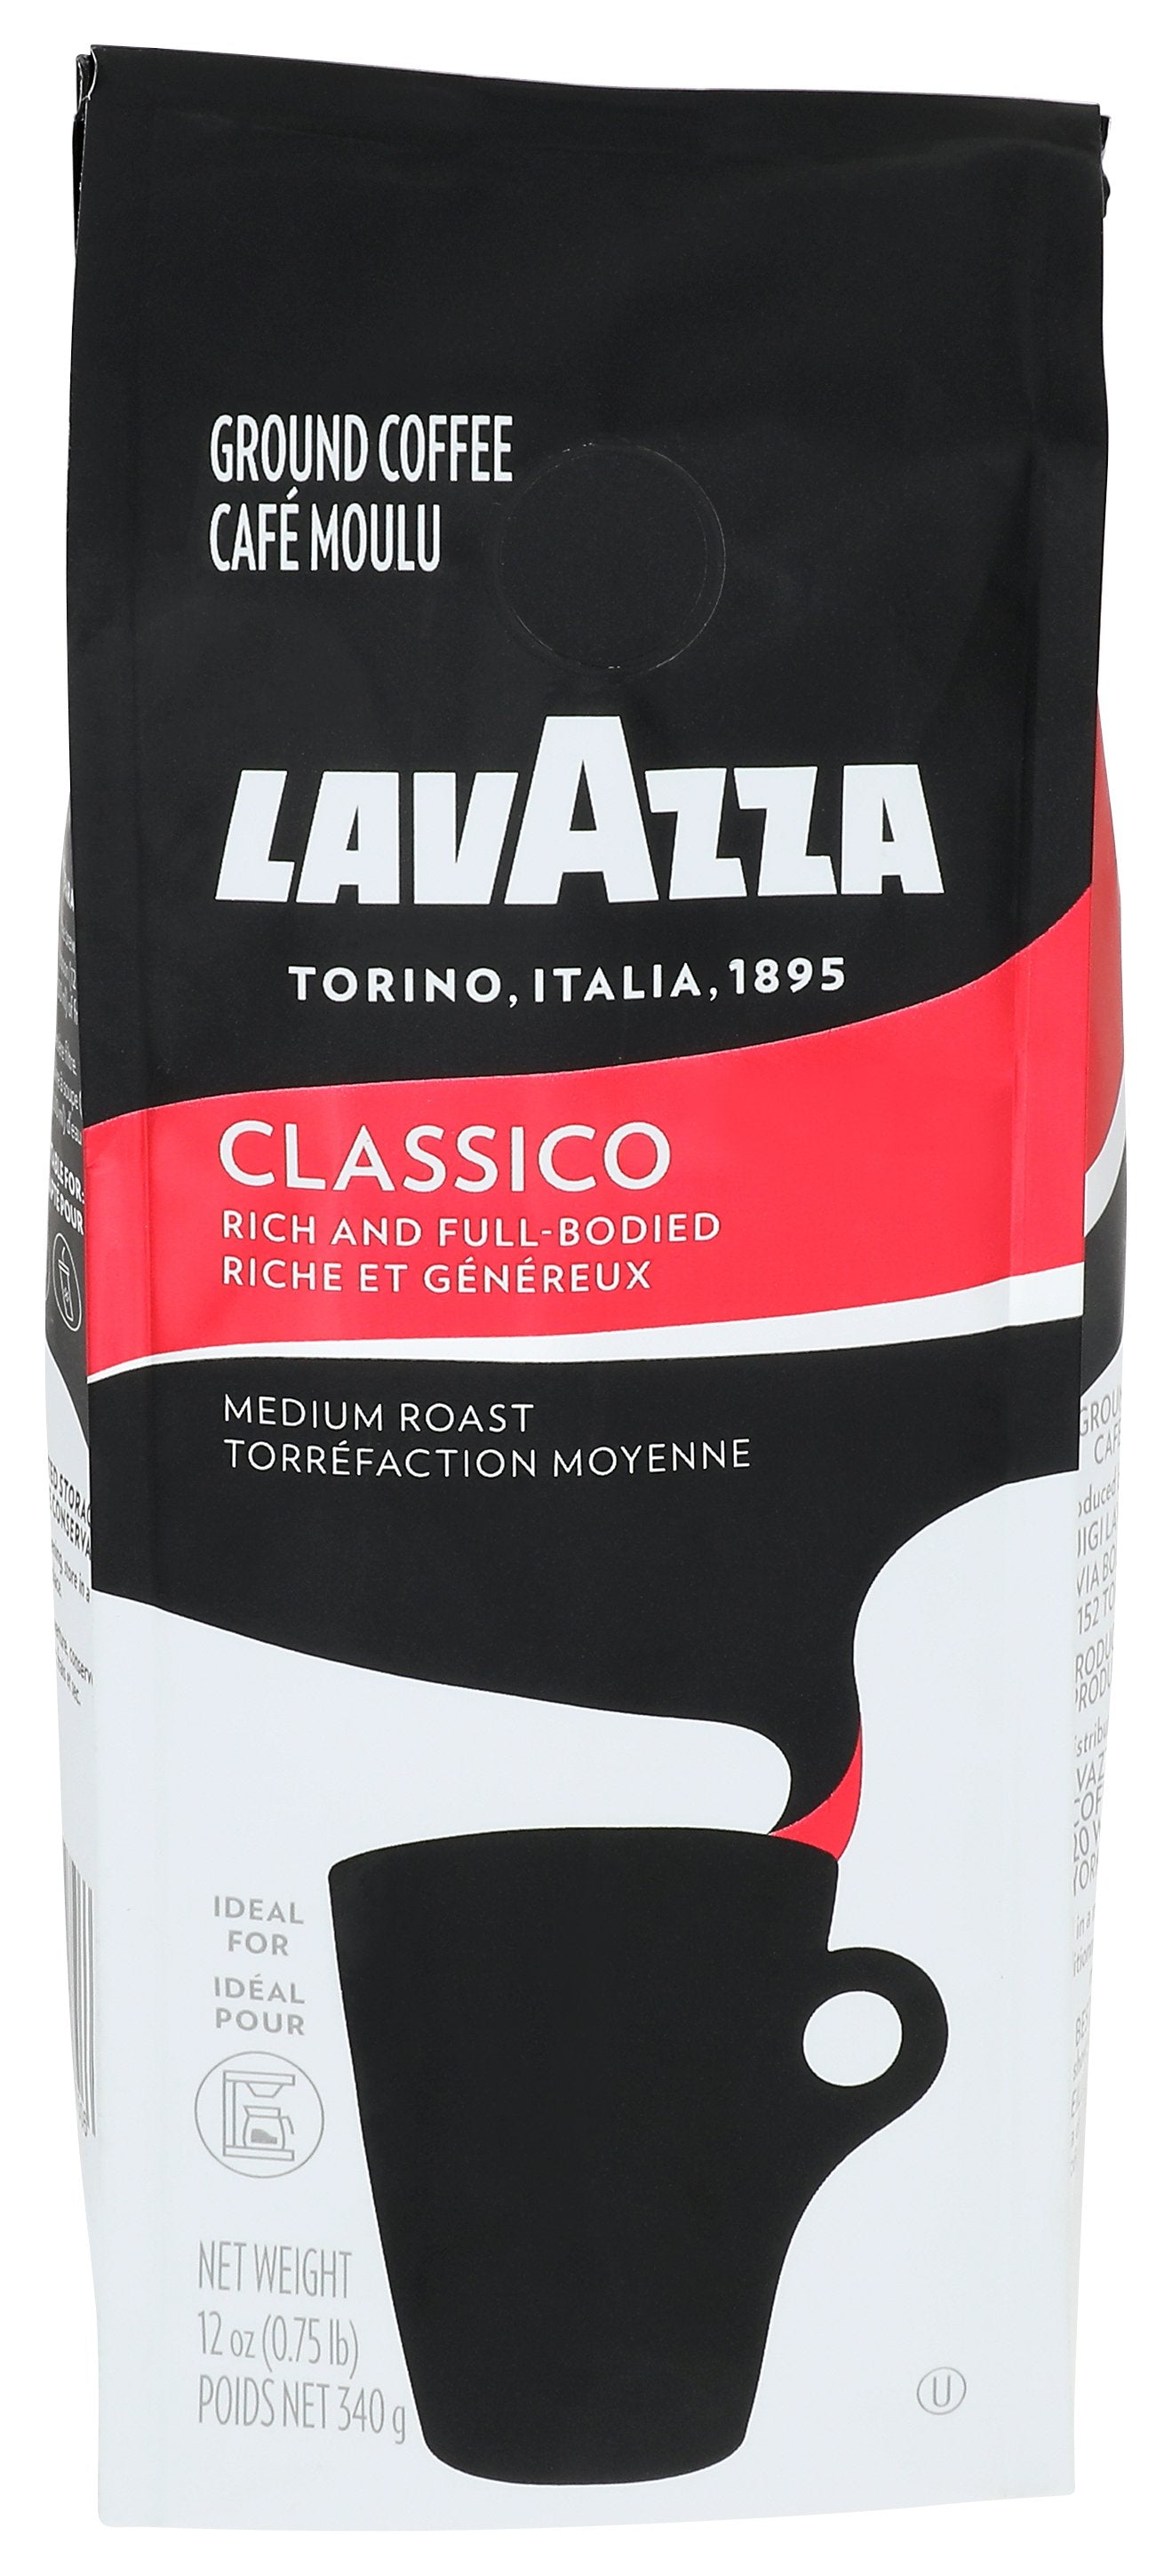 LAVAZZA COFFEE GRND CLASSICO - Case of 6